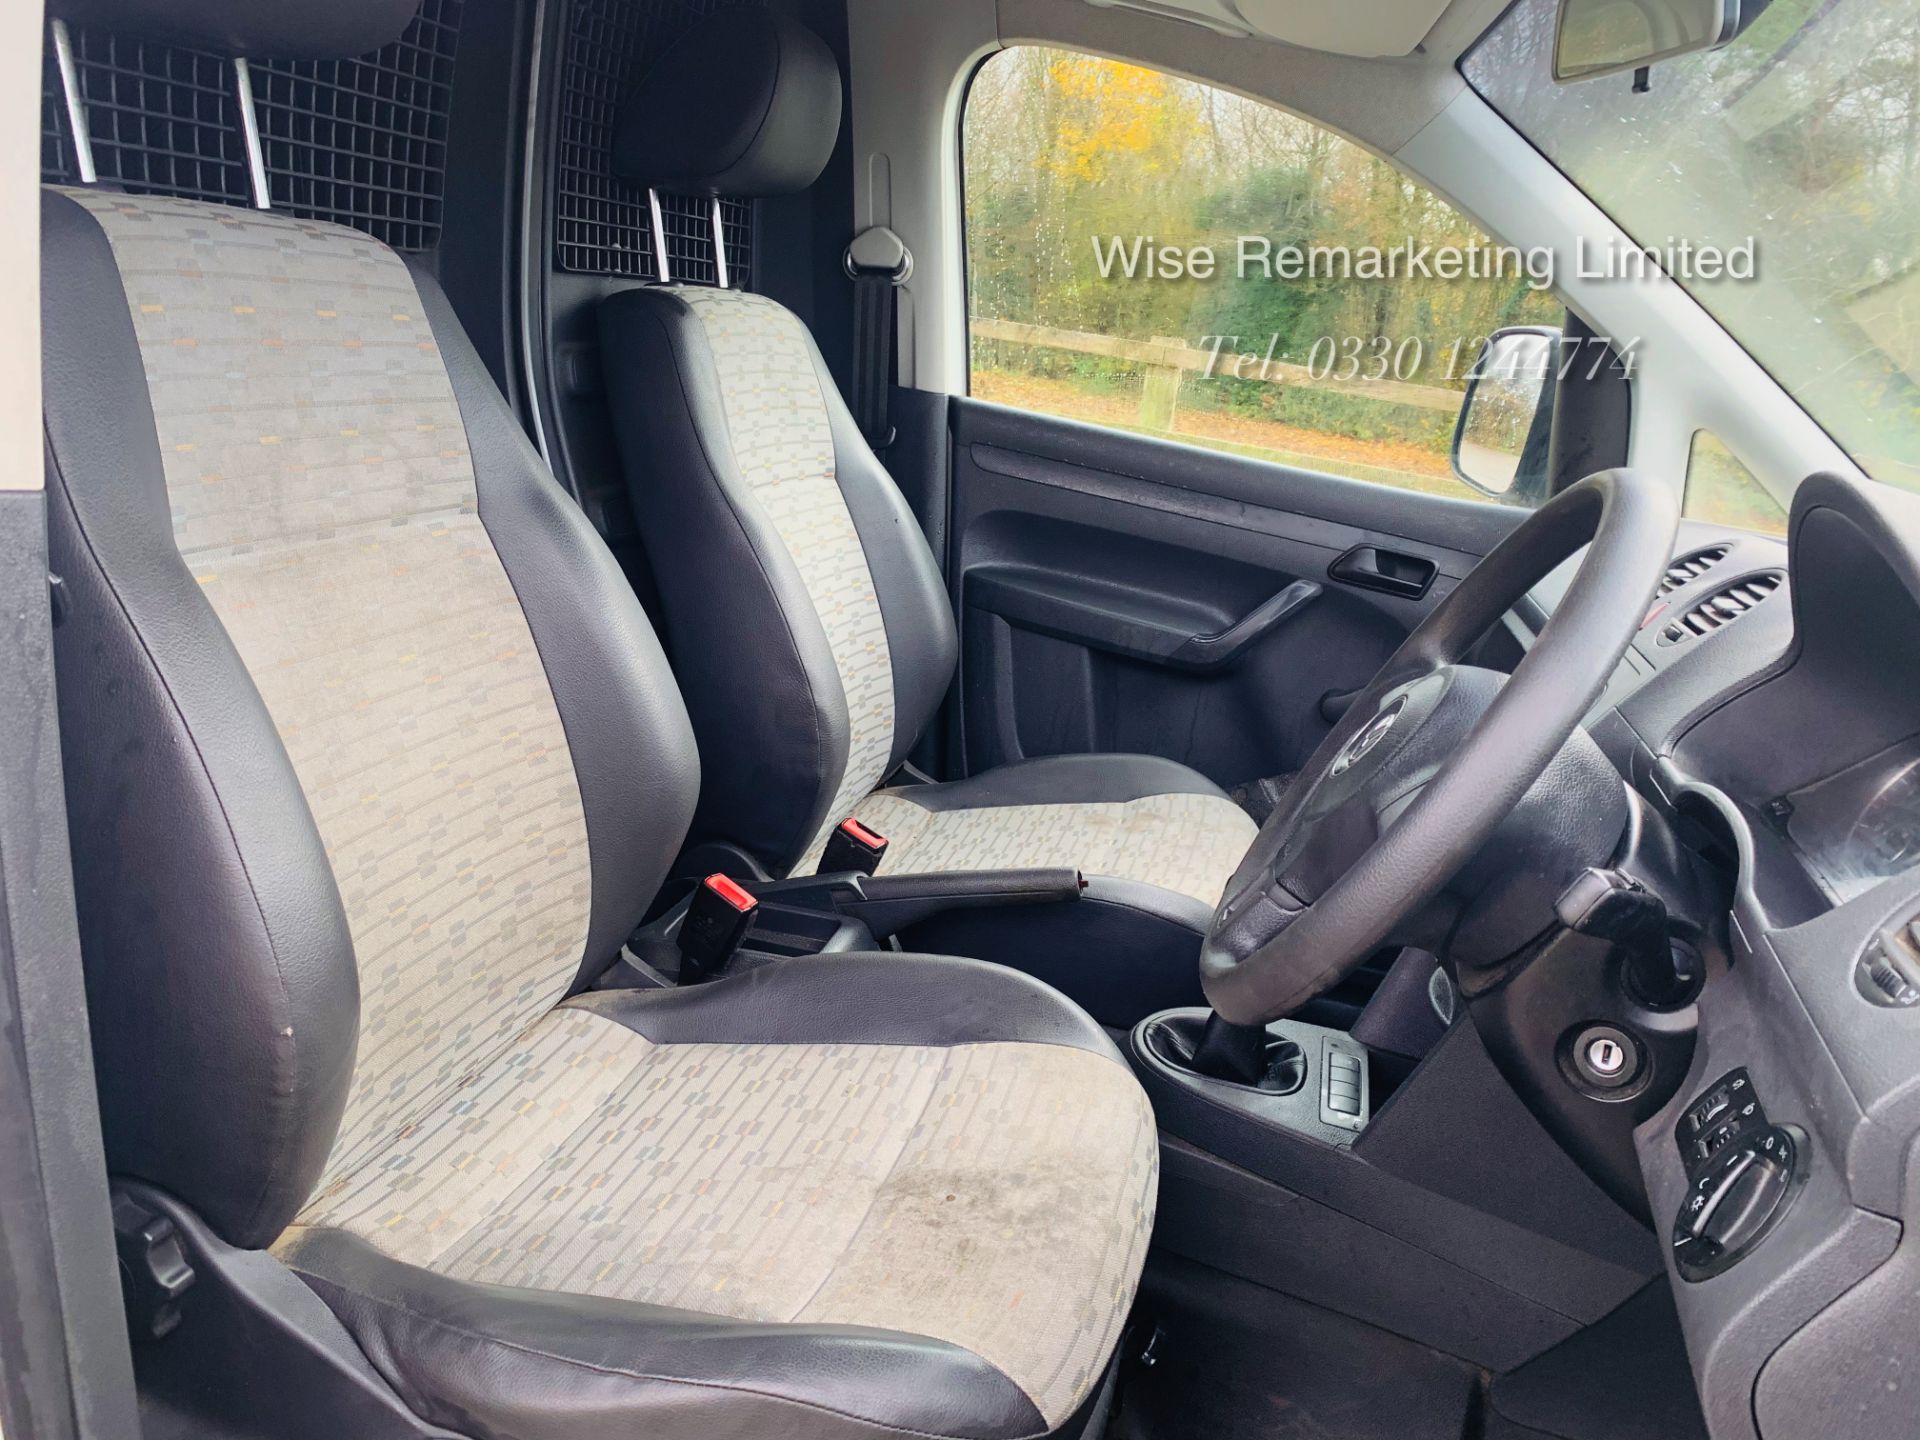 Volkswagen Caddy C20 1.6 TDI - 2013 13 Reg - Side Loading Door - Cruise Control - - Image 11 of 15